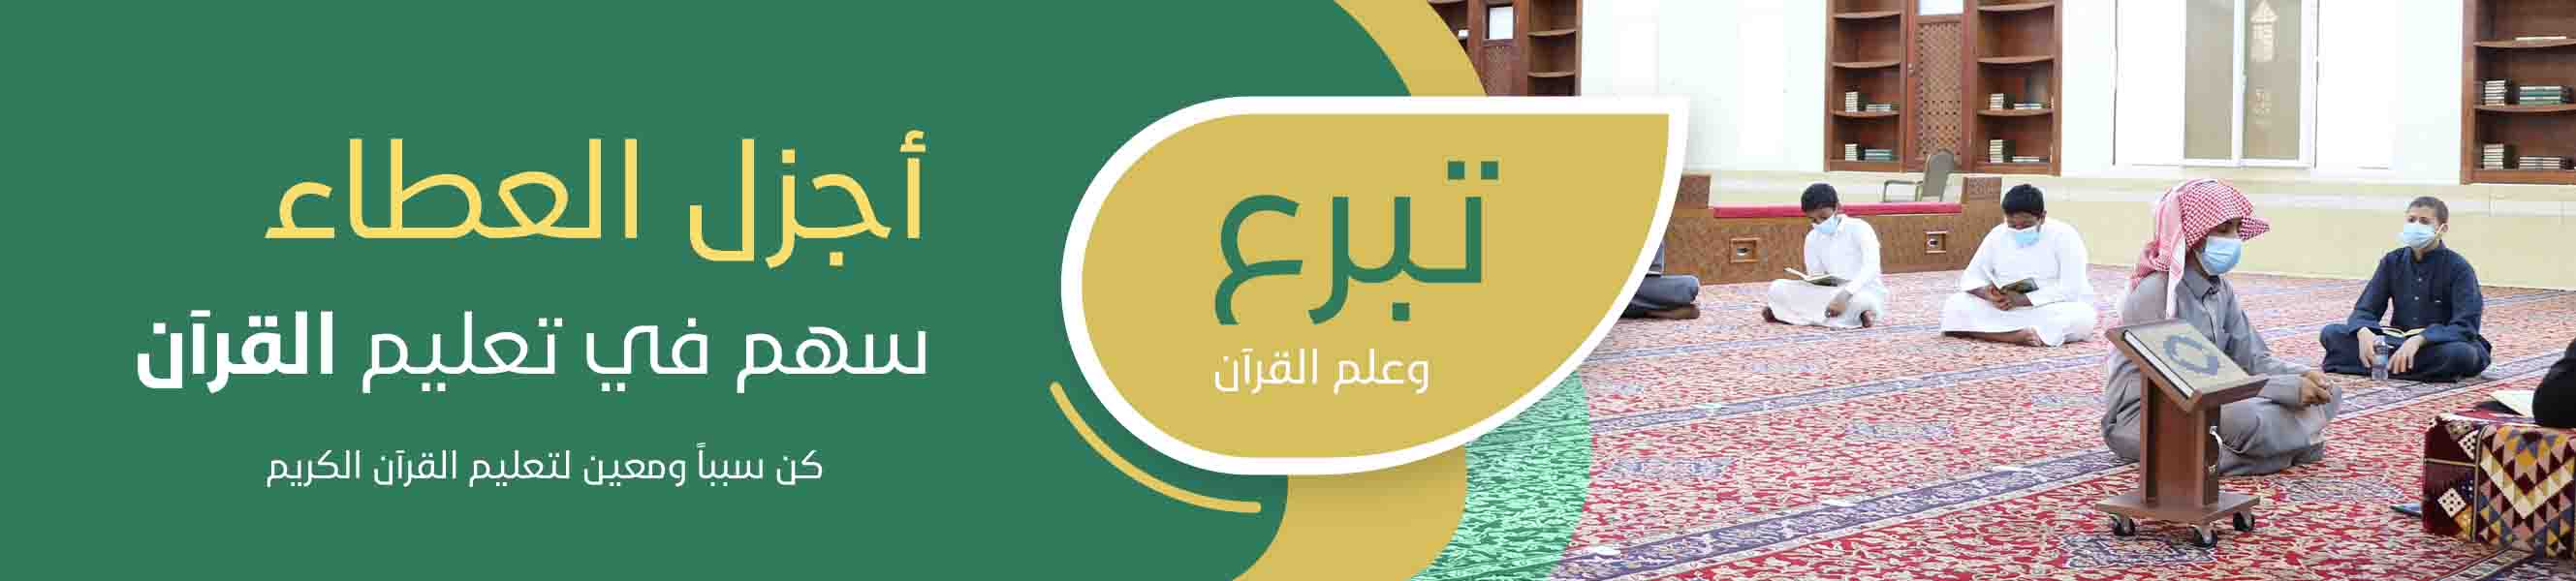 الجمعية الخيرية لتحفيظ القرآن الكريم بمحافظة تربة